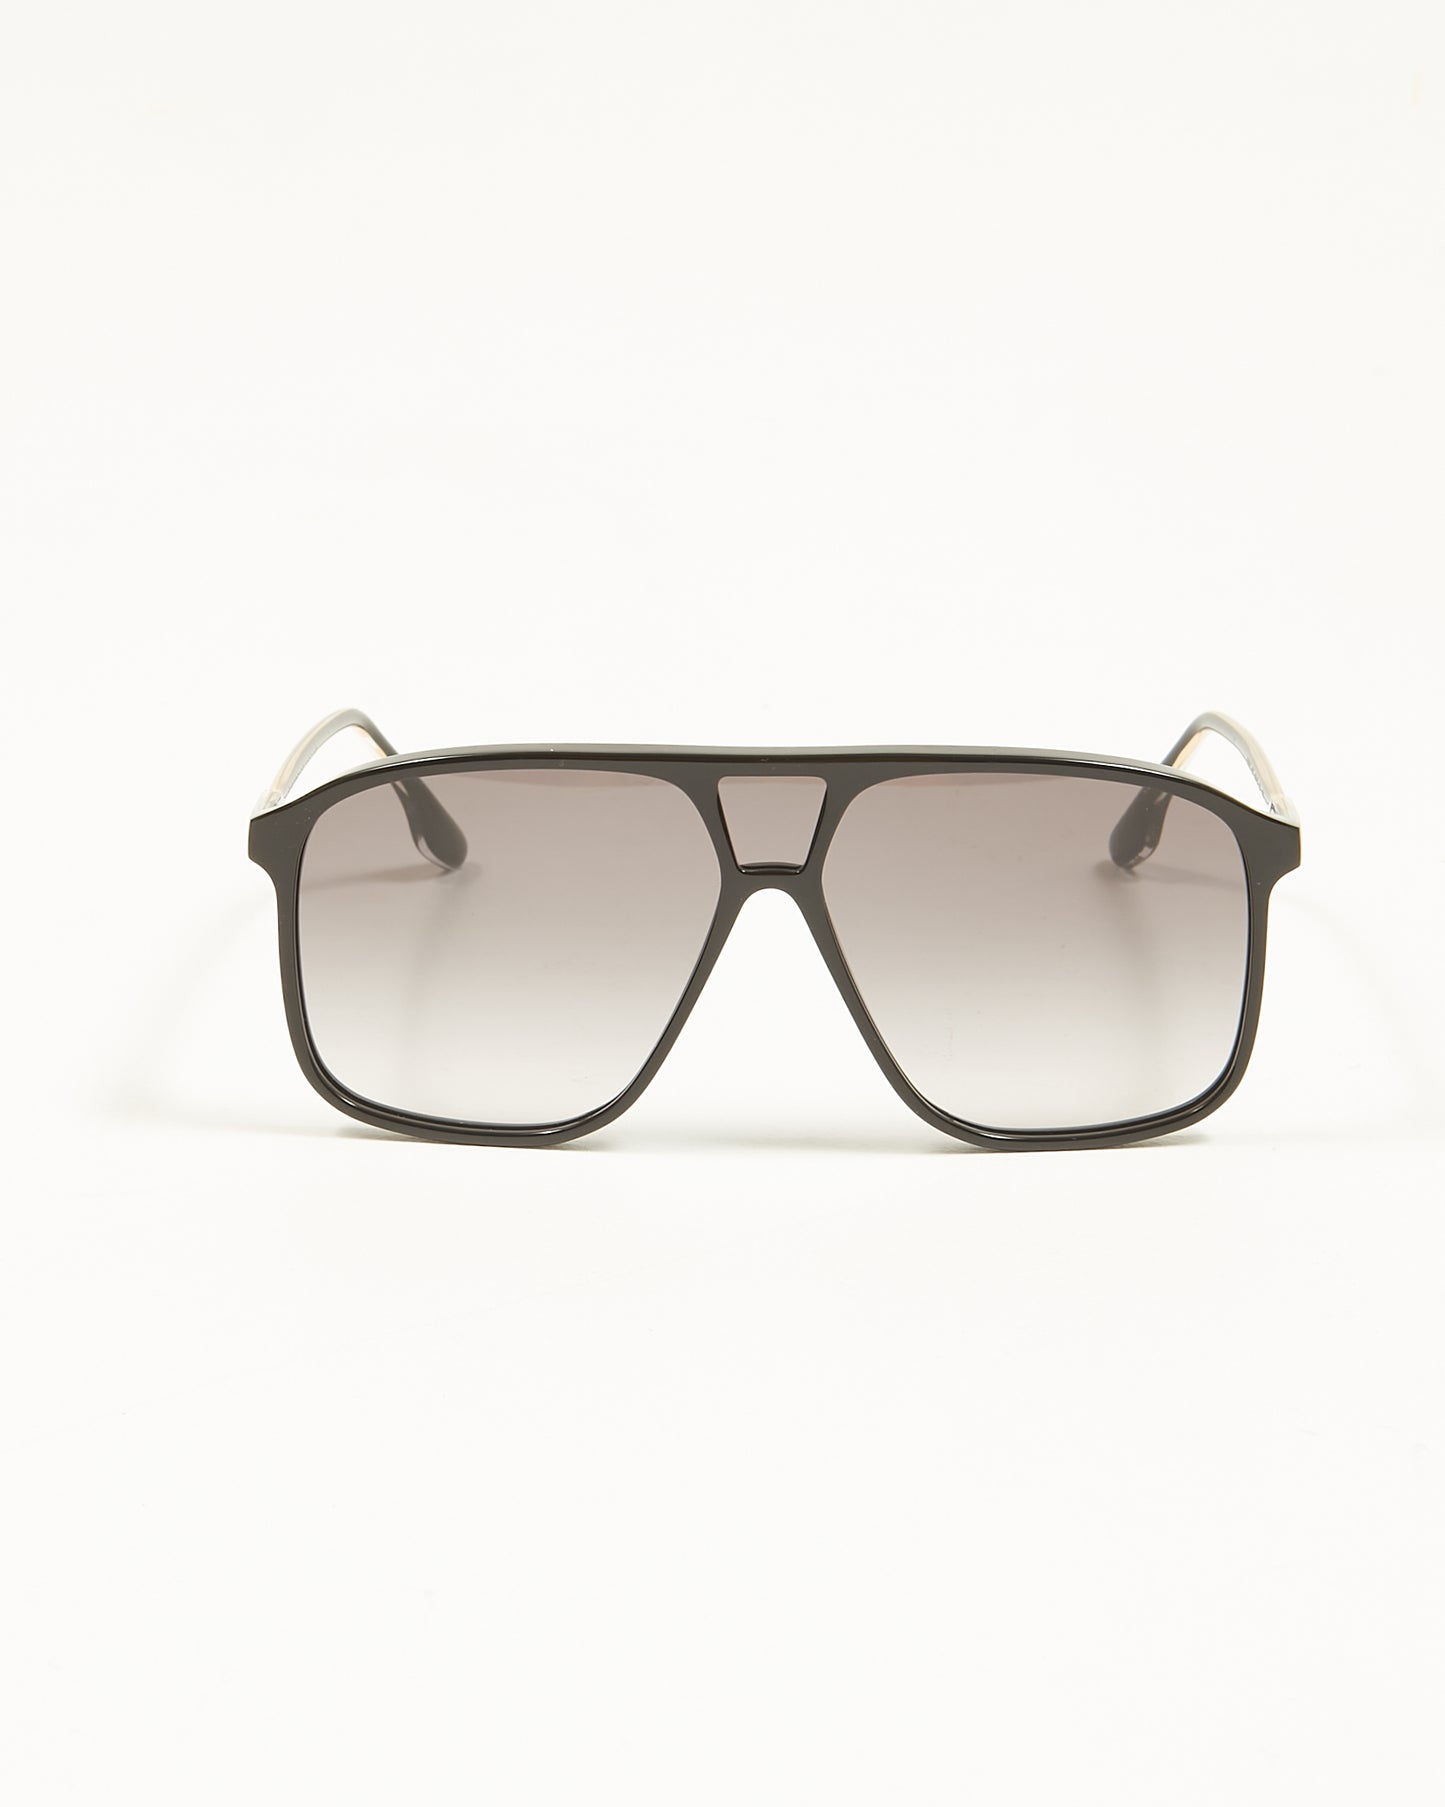 Victoria Beckham Black/Gold VB156S Shield Square Aviator Sunglasses